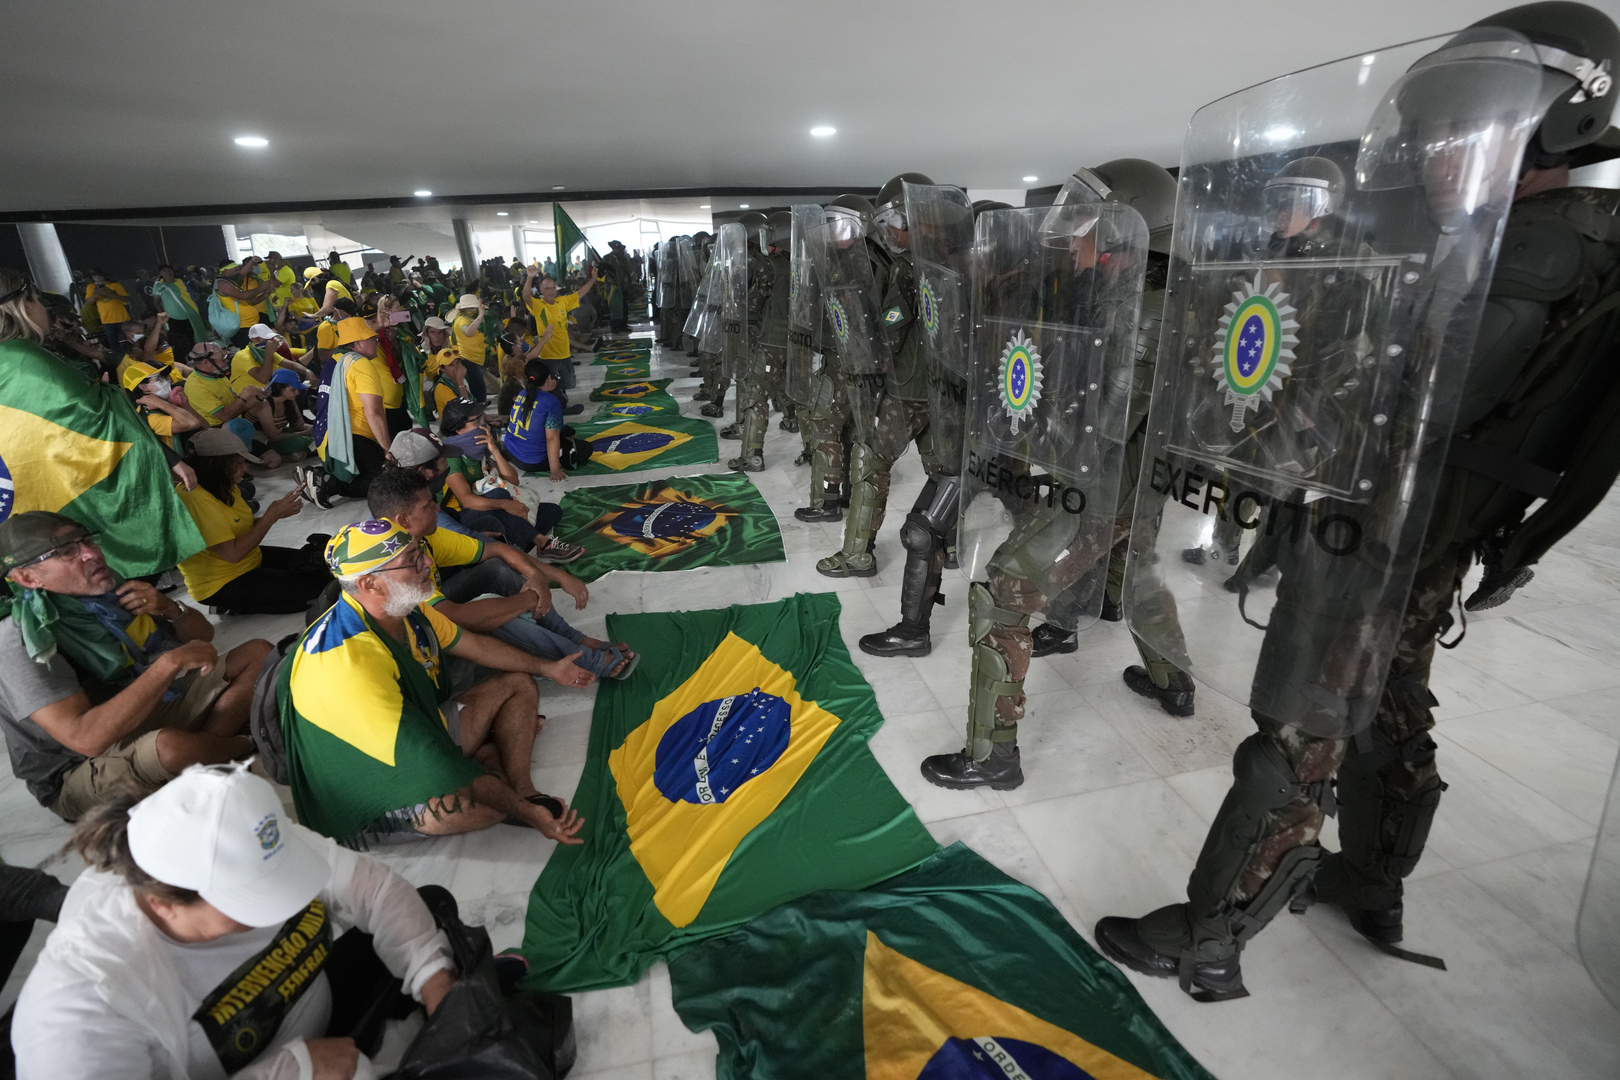 بعد اقتحامها من قبل أنصار سلفه.. لولا يتفقد مقار السلطة في البرازيل (صور+ فيديو)